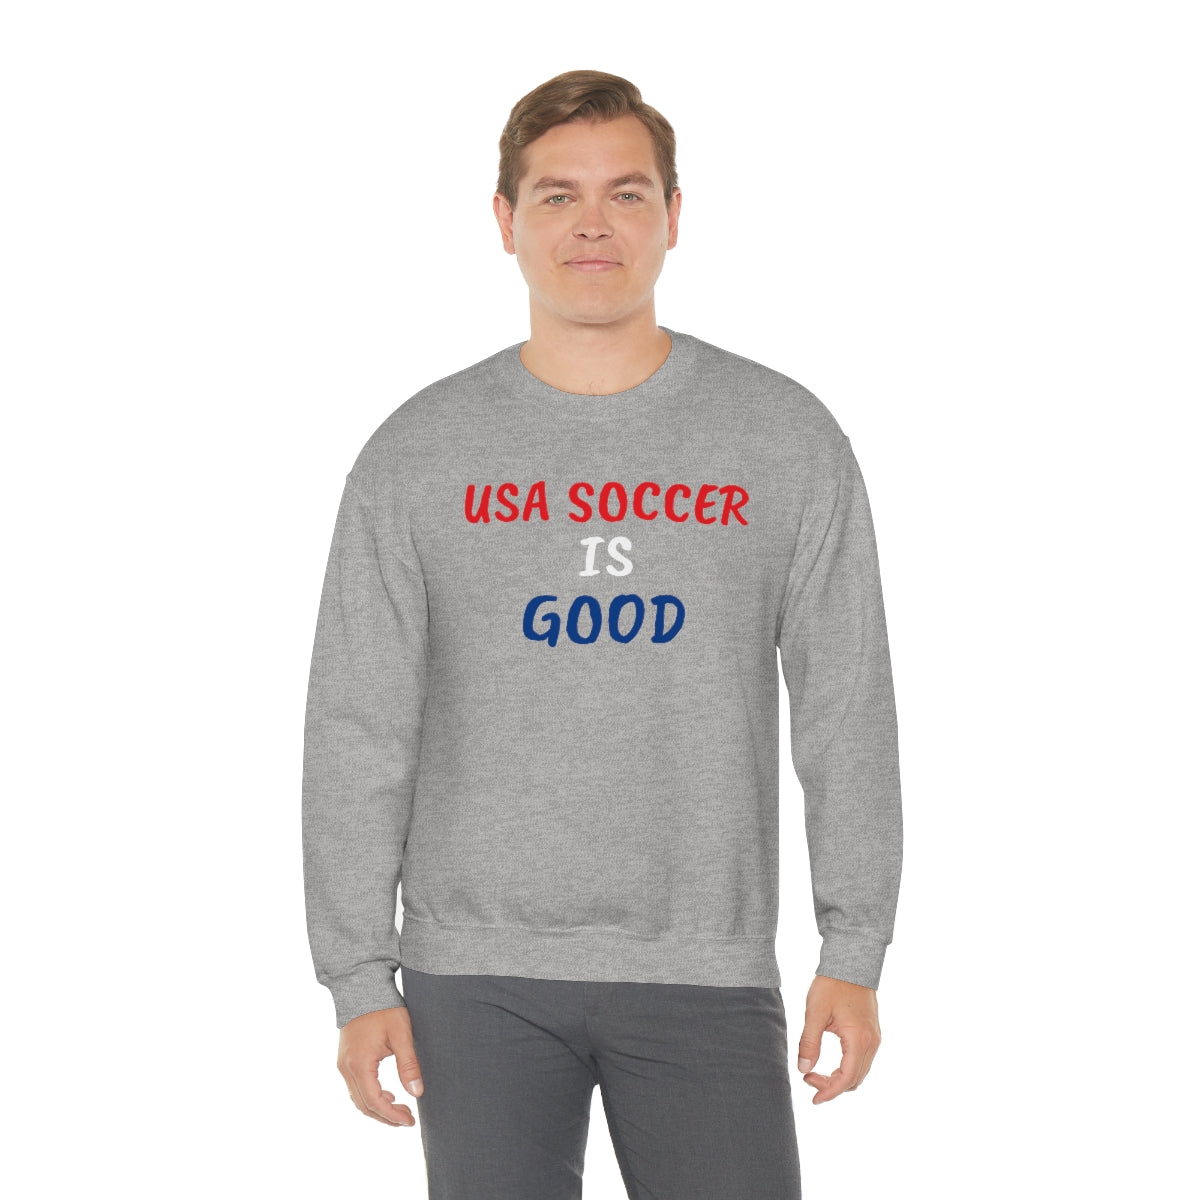 USA SOCCER IS GOOD Crewneck Sweatshirt - IsGoodBrand